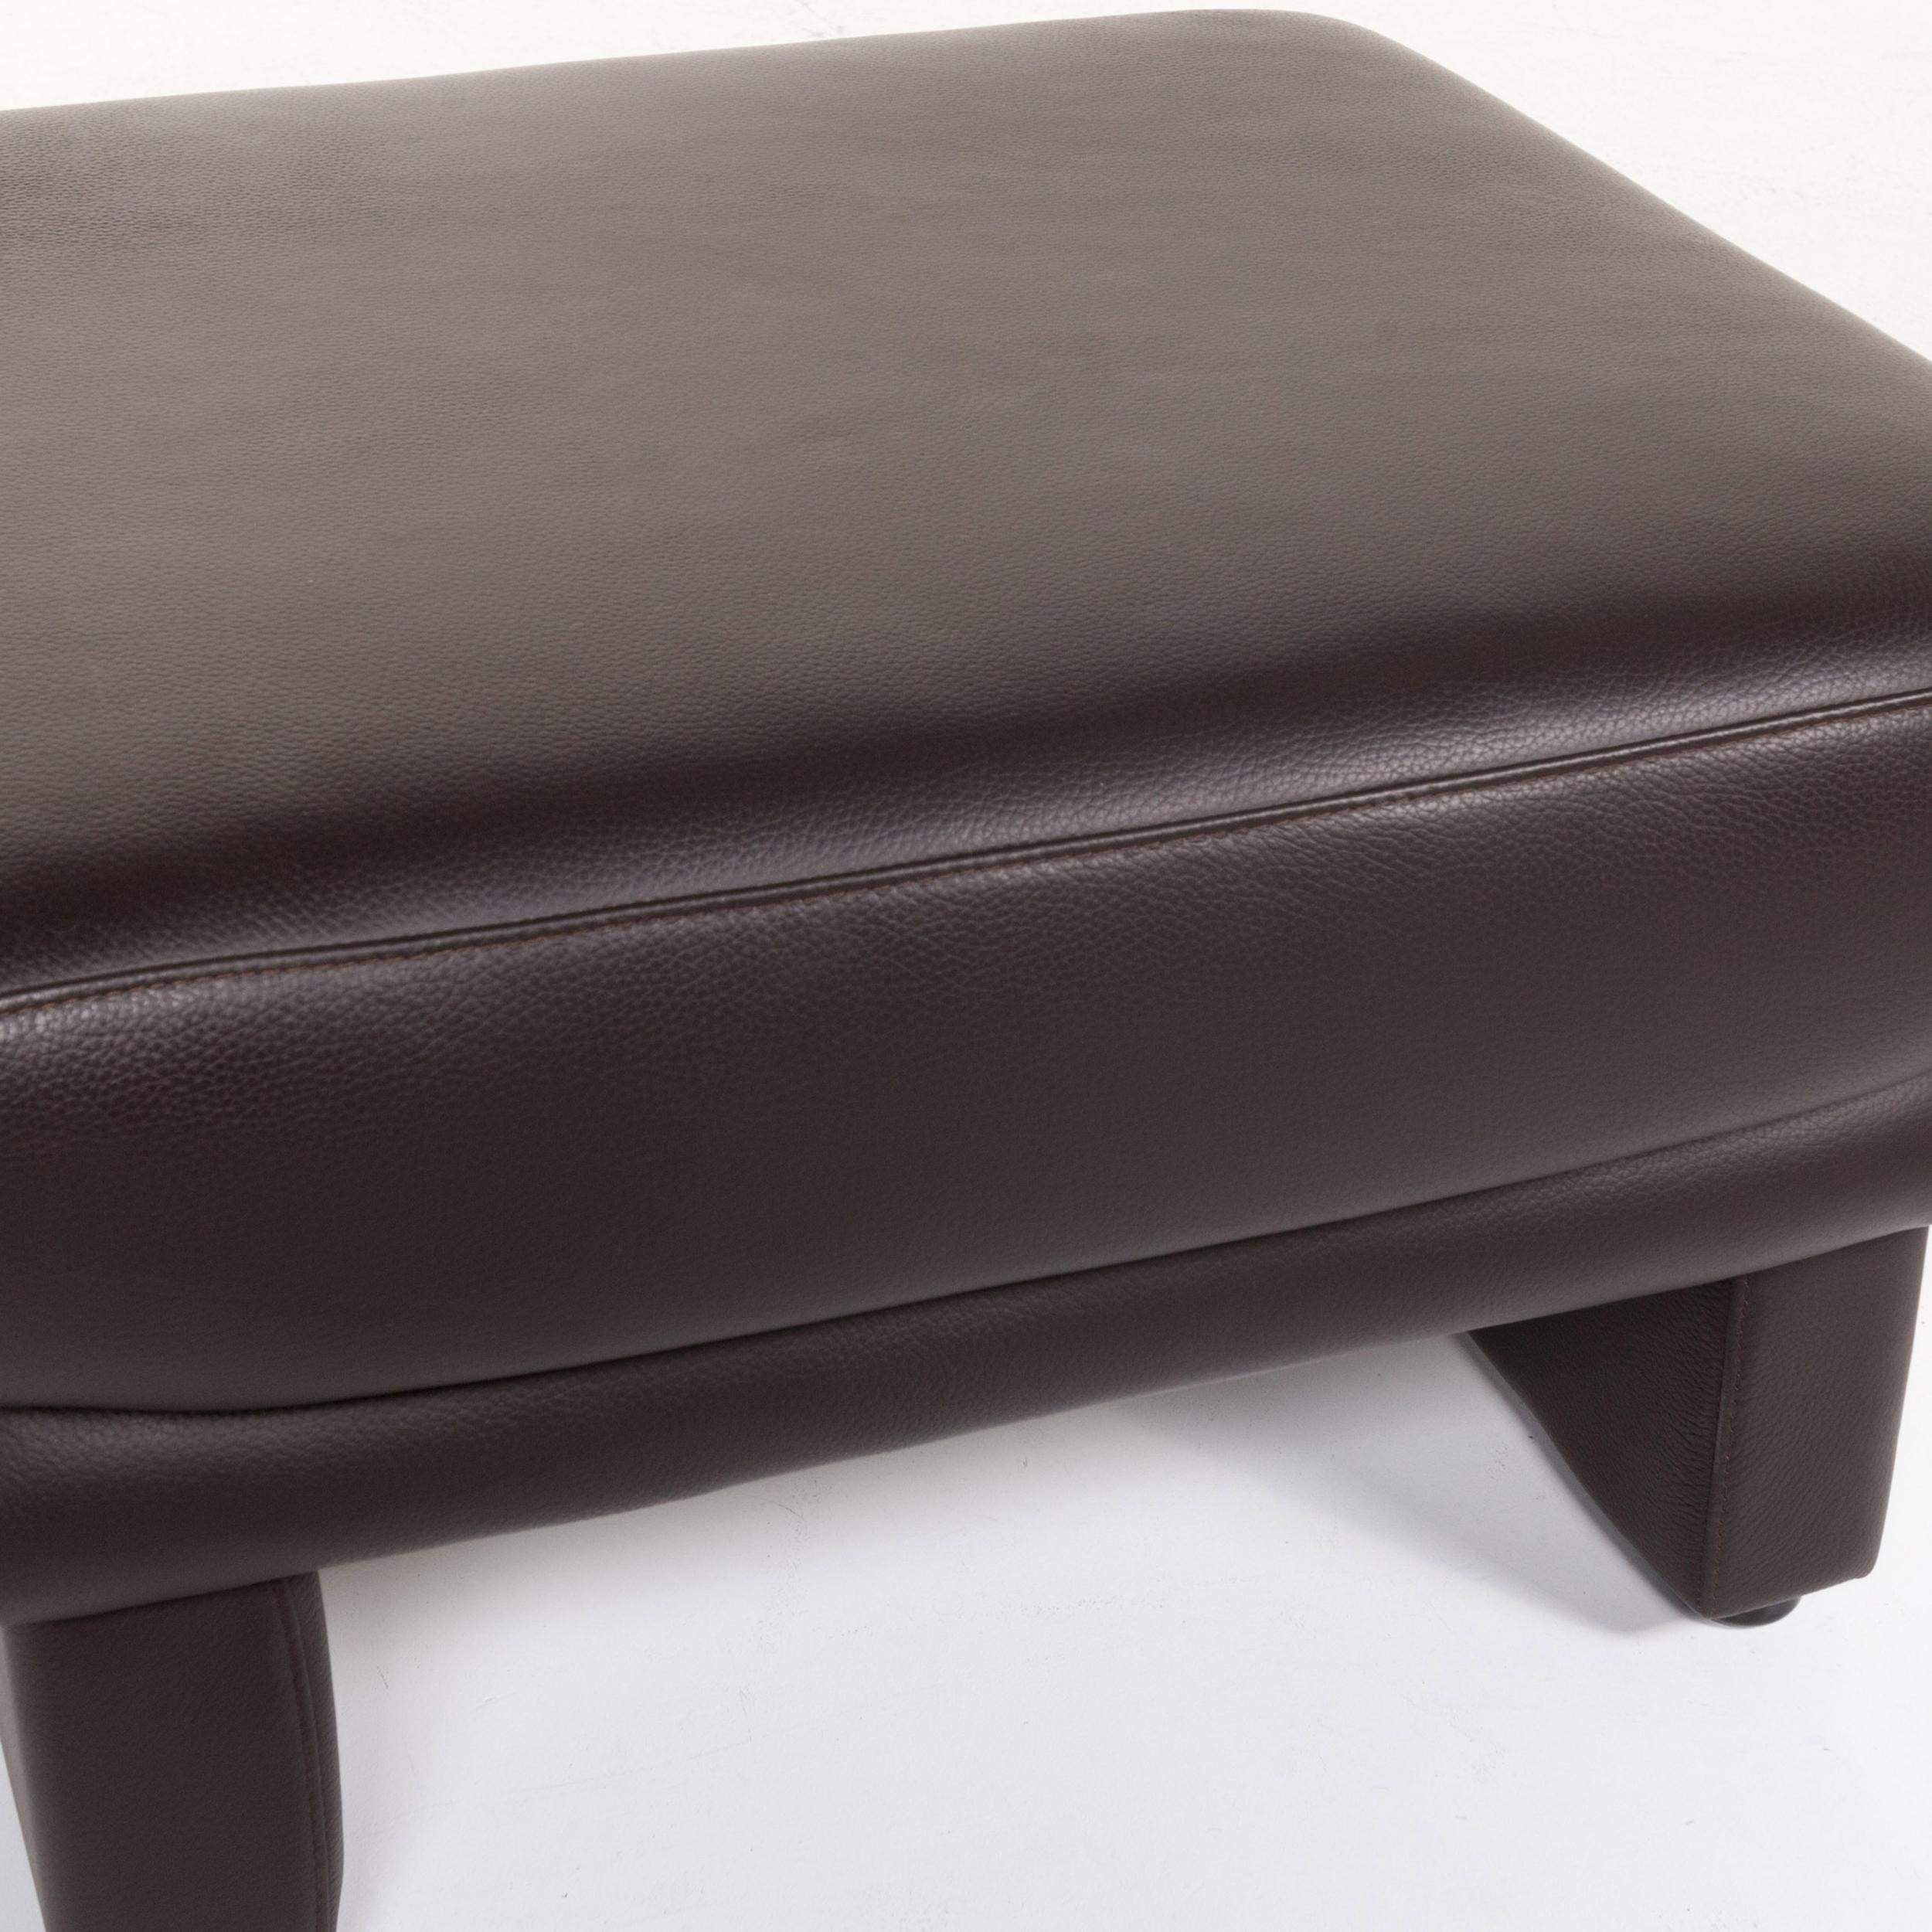 German Willi Schillig Leather Sofa Set Brown Dark Brown Couch